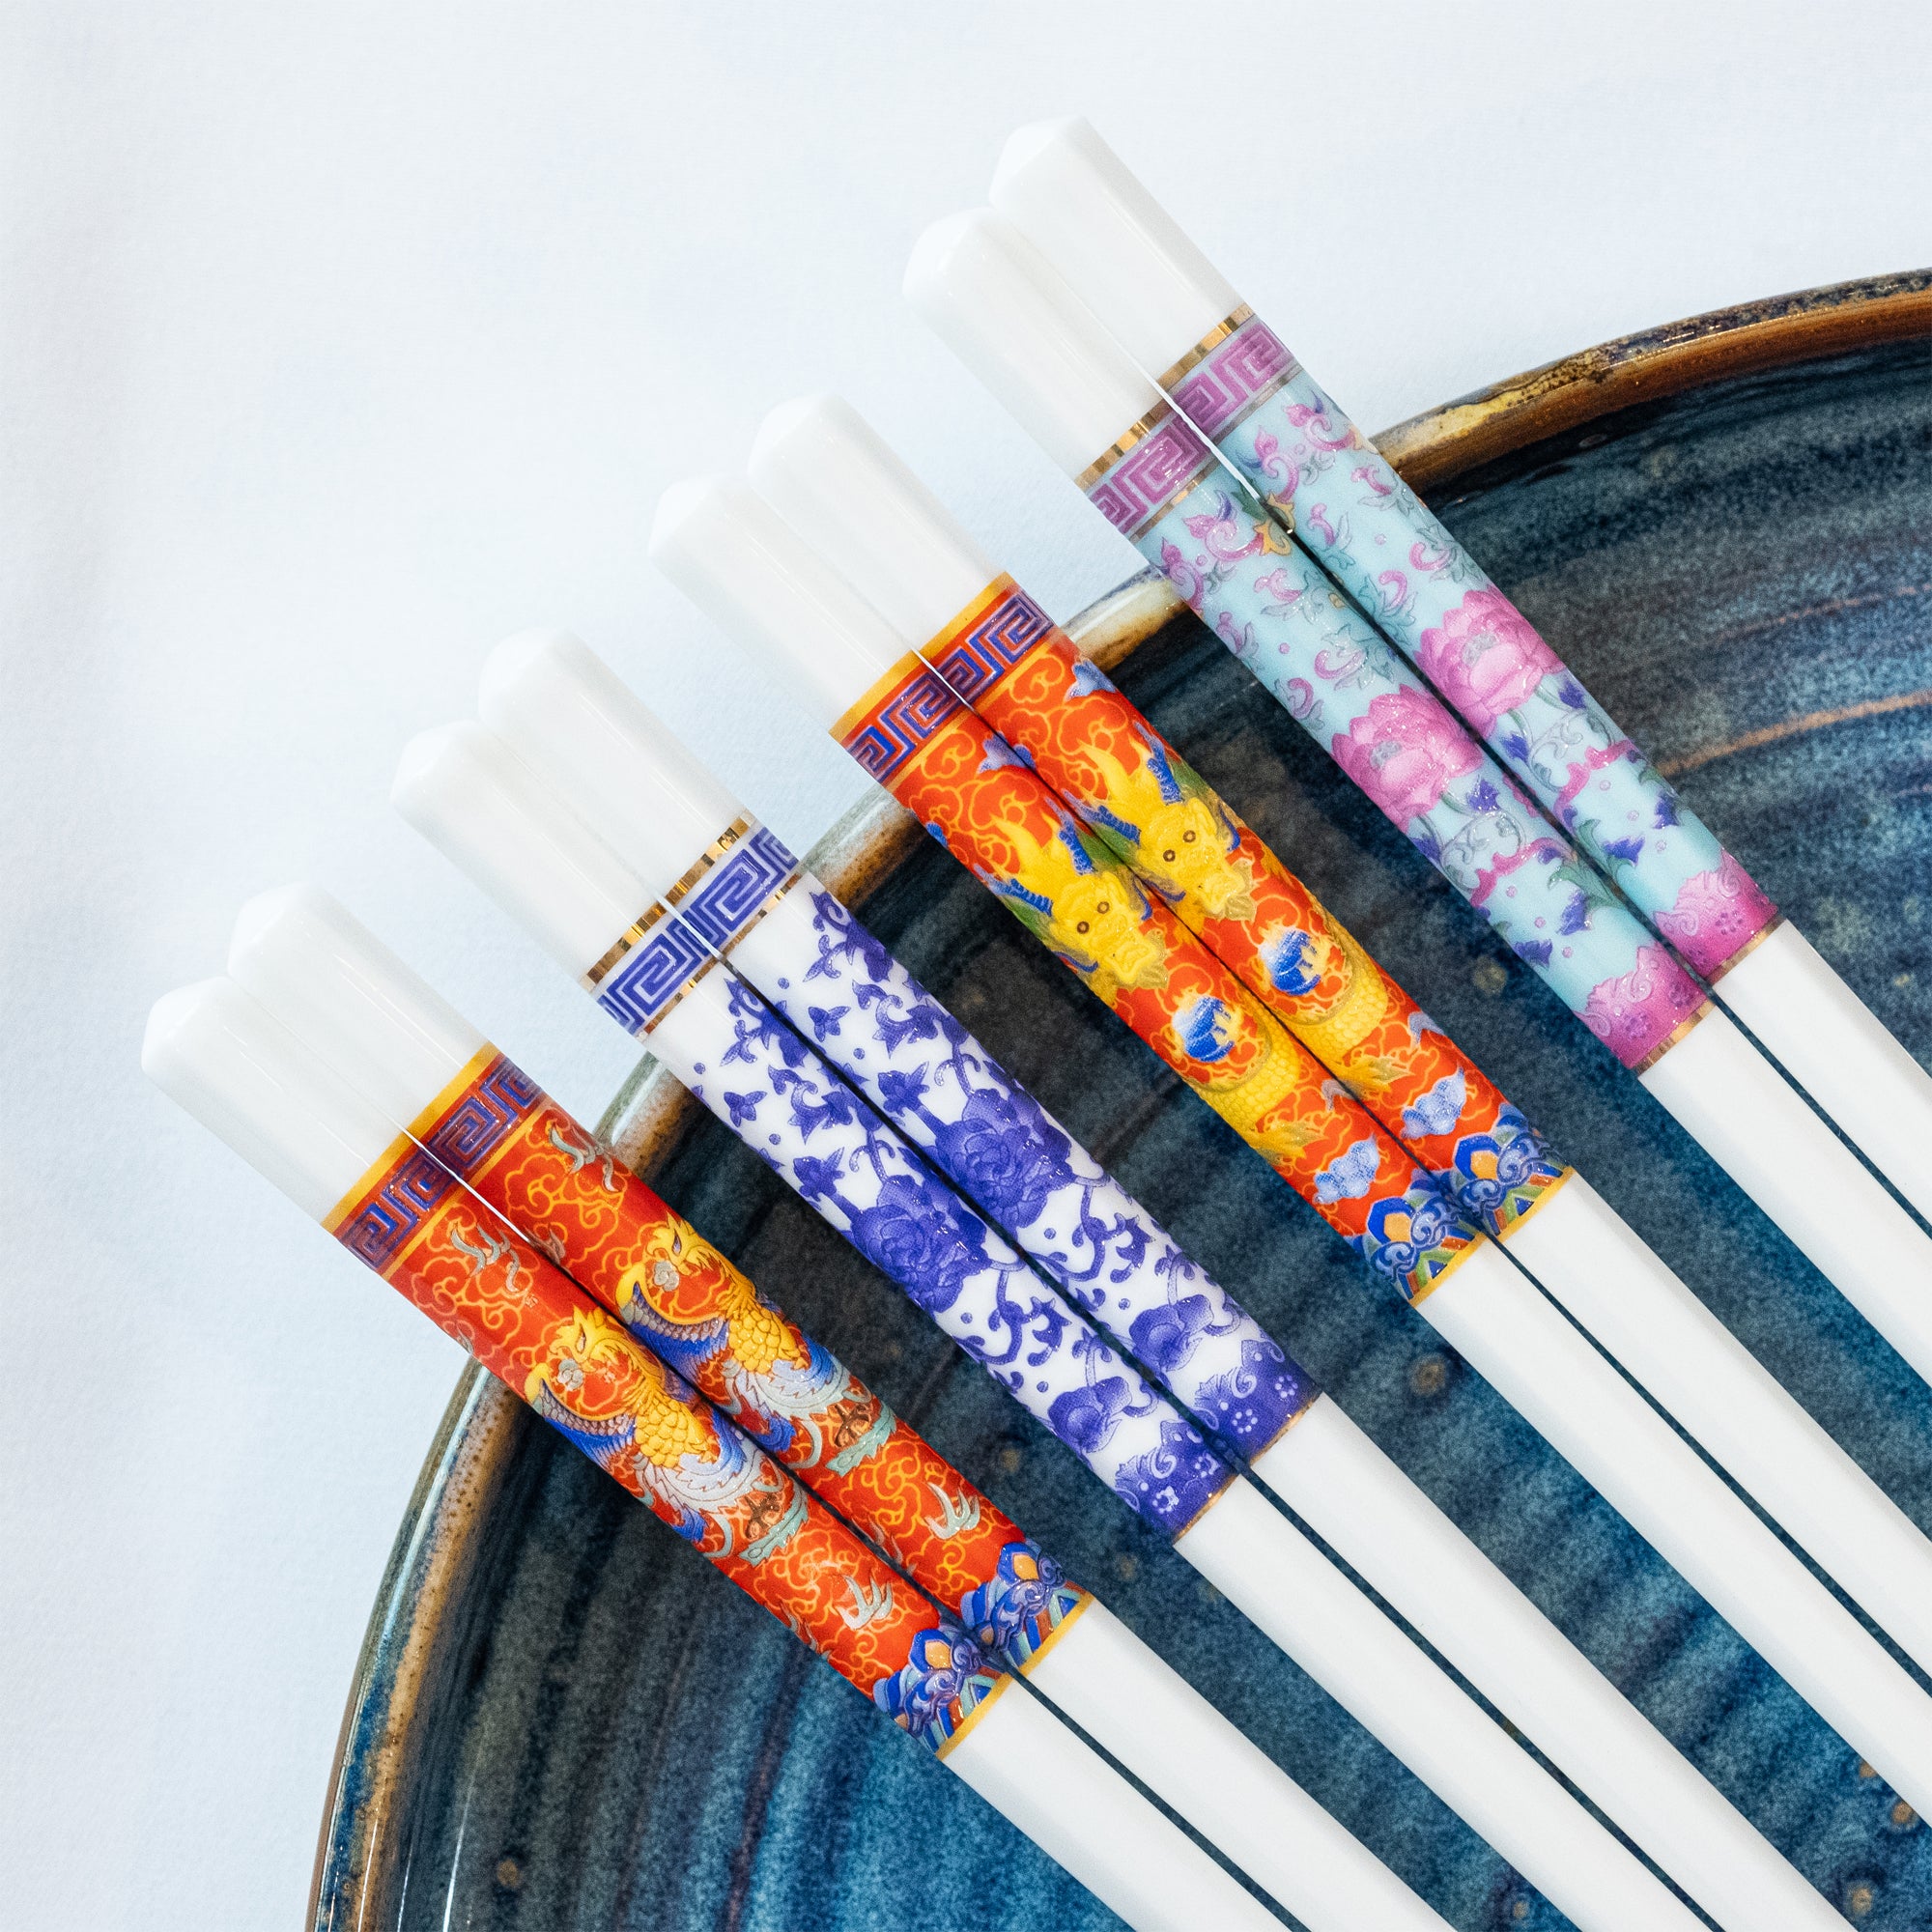 Ceramic Chopsticks (10 sets)